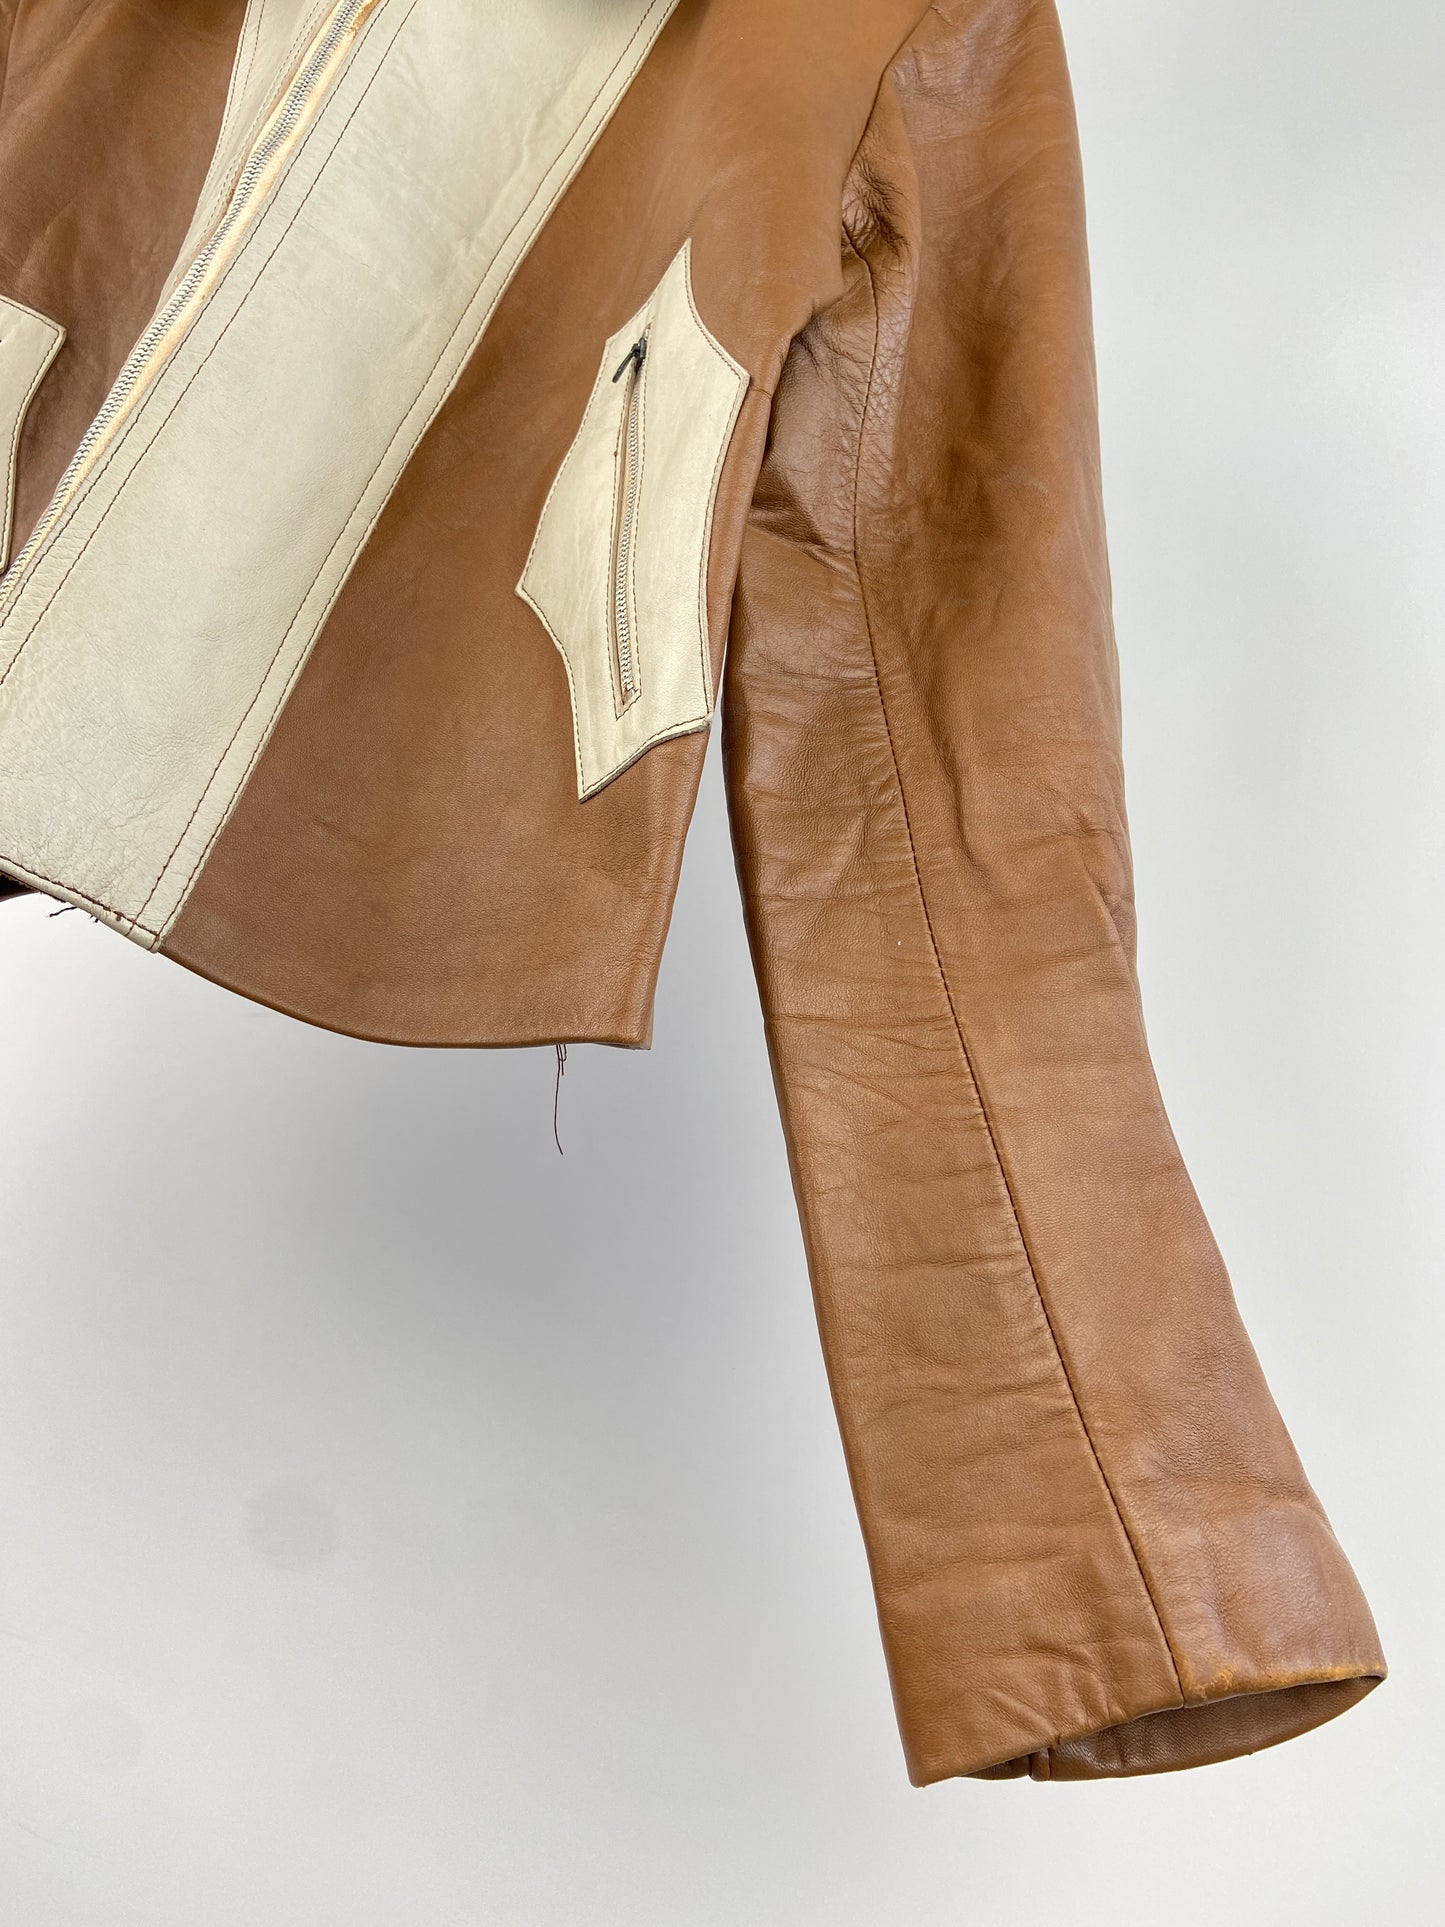 Vintage 70s Leather Contrast Jacket